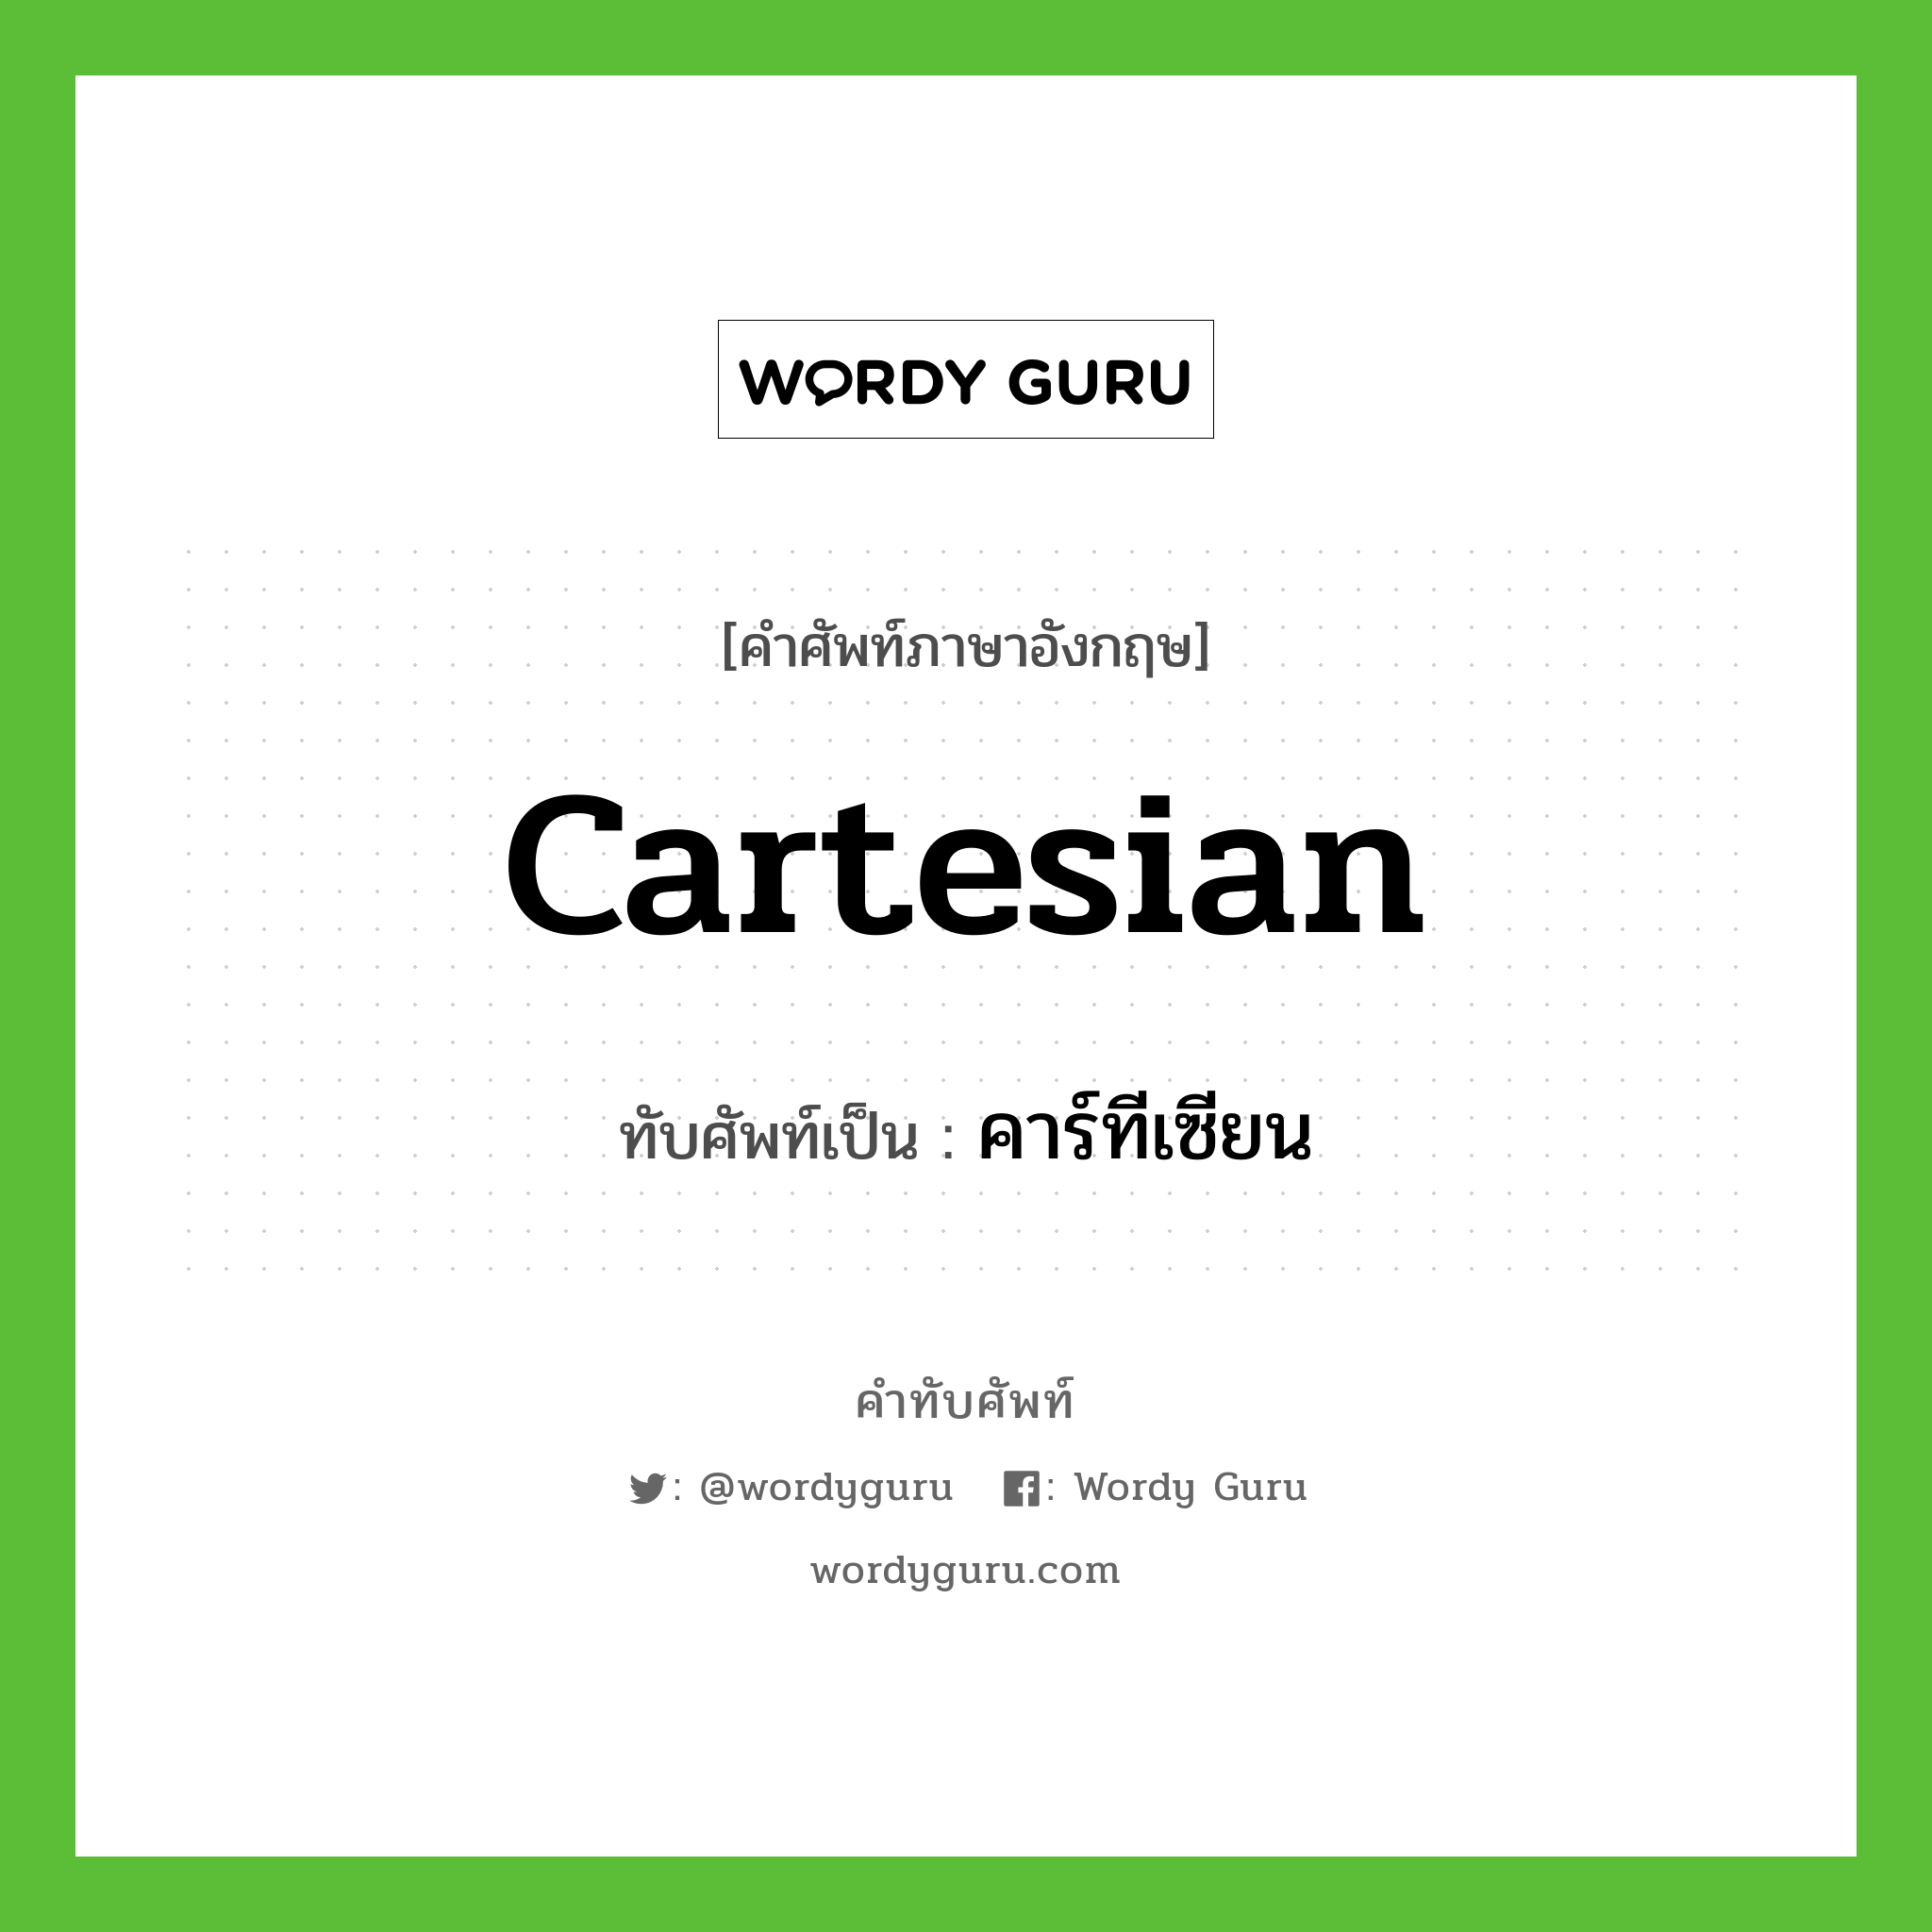 คาร์ทีเซียน เขียนอย่างไร?, คำศัพท์ภาษาอังกฤษ คาร์ทีเซียน ทับศัพท์เป็น Cartesian